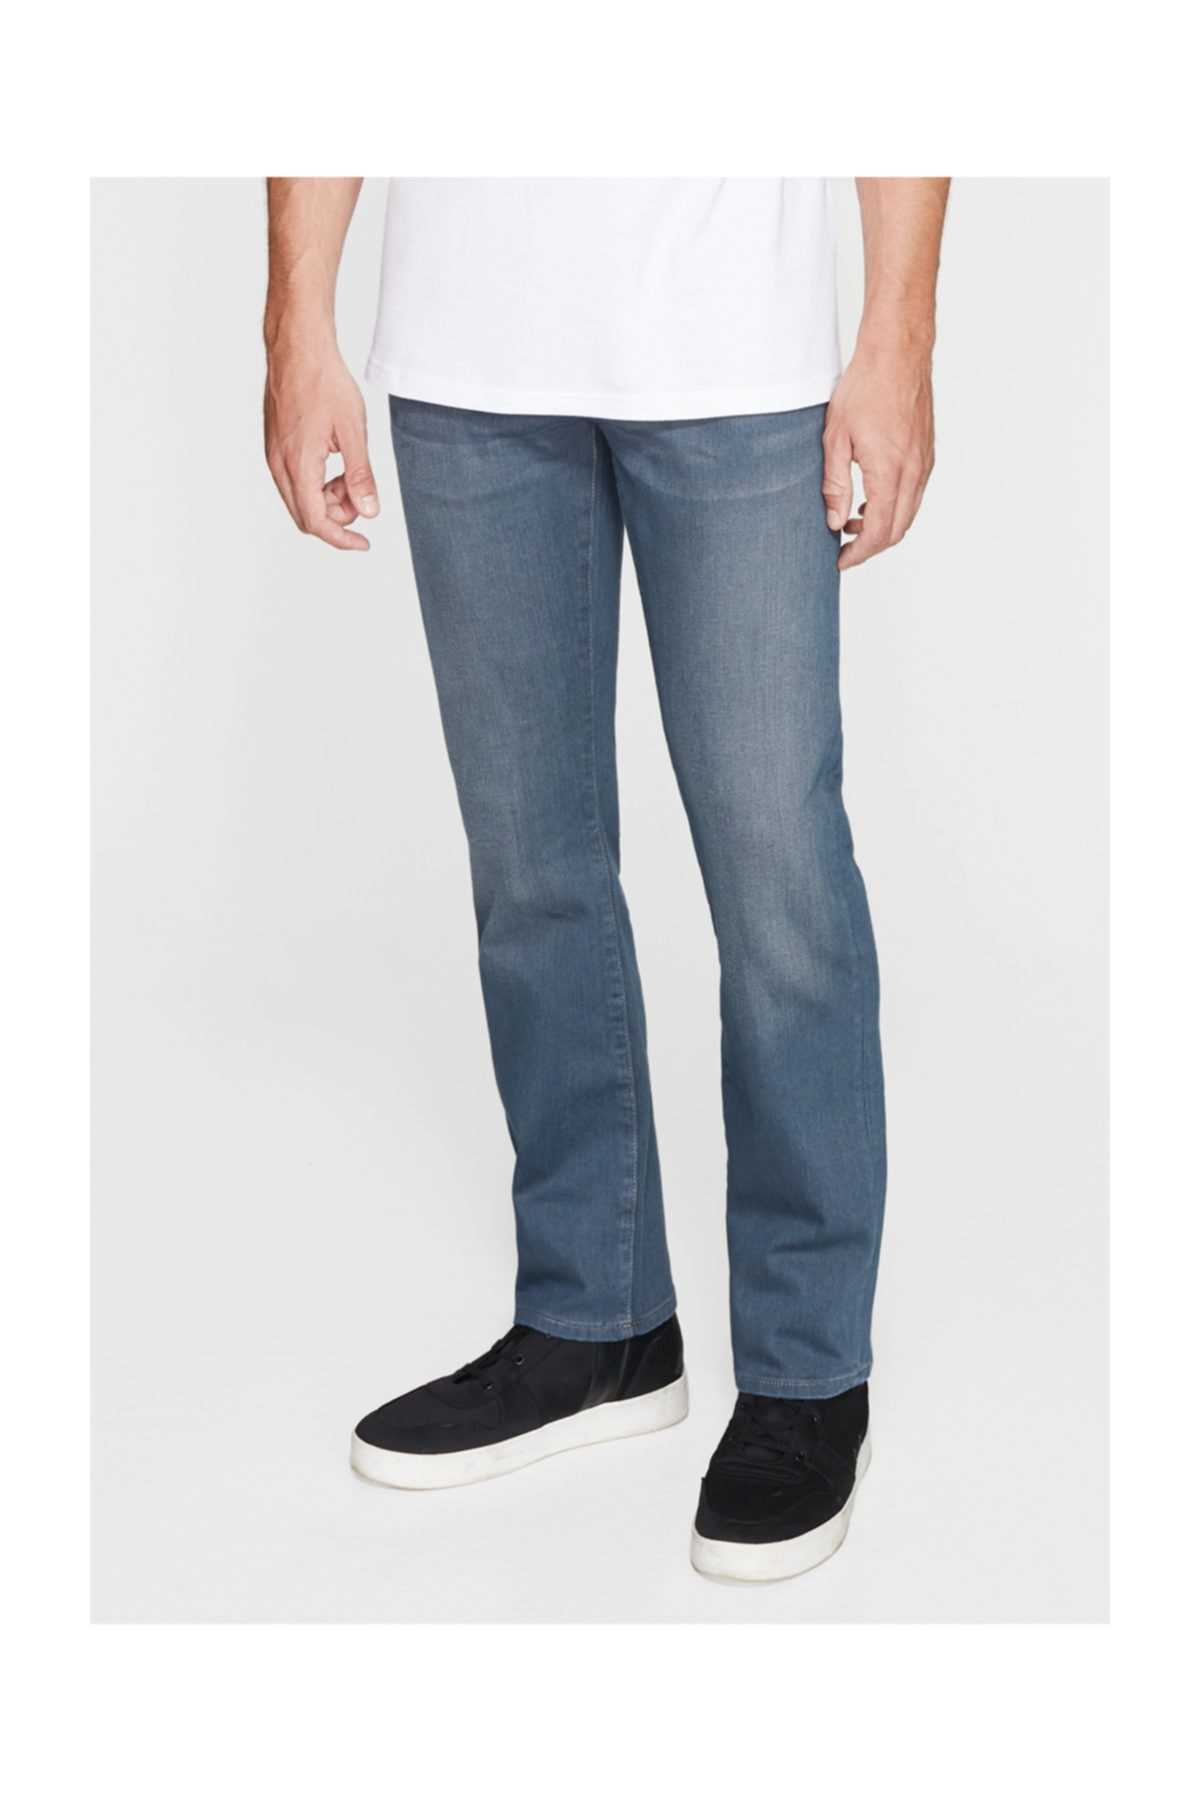 شلوار جین مردانه فروشگاه اینترنتی برند ماوی رنگ لاجوردی کد ty2708467